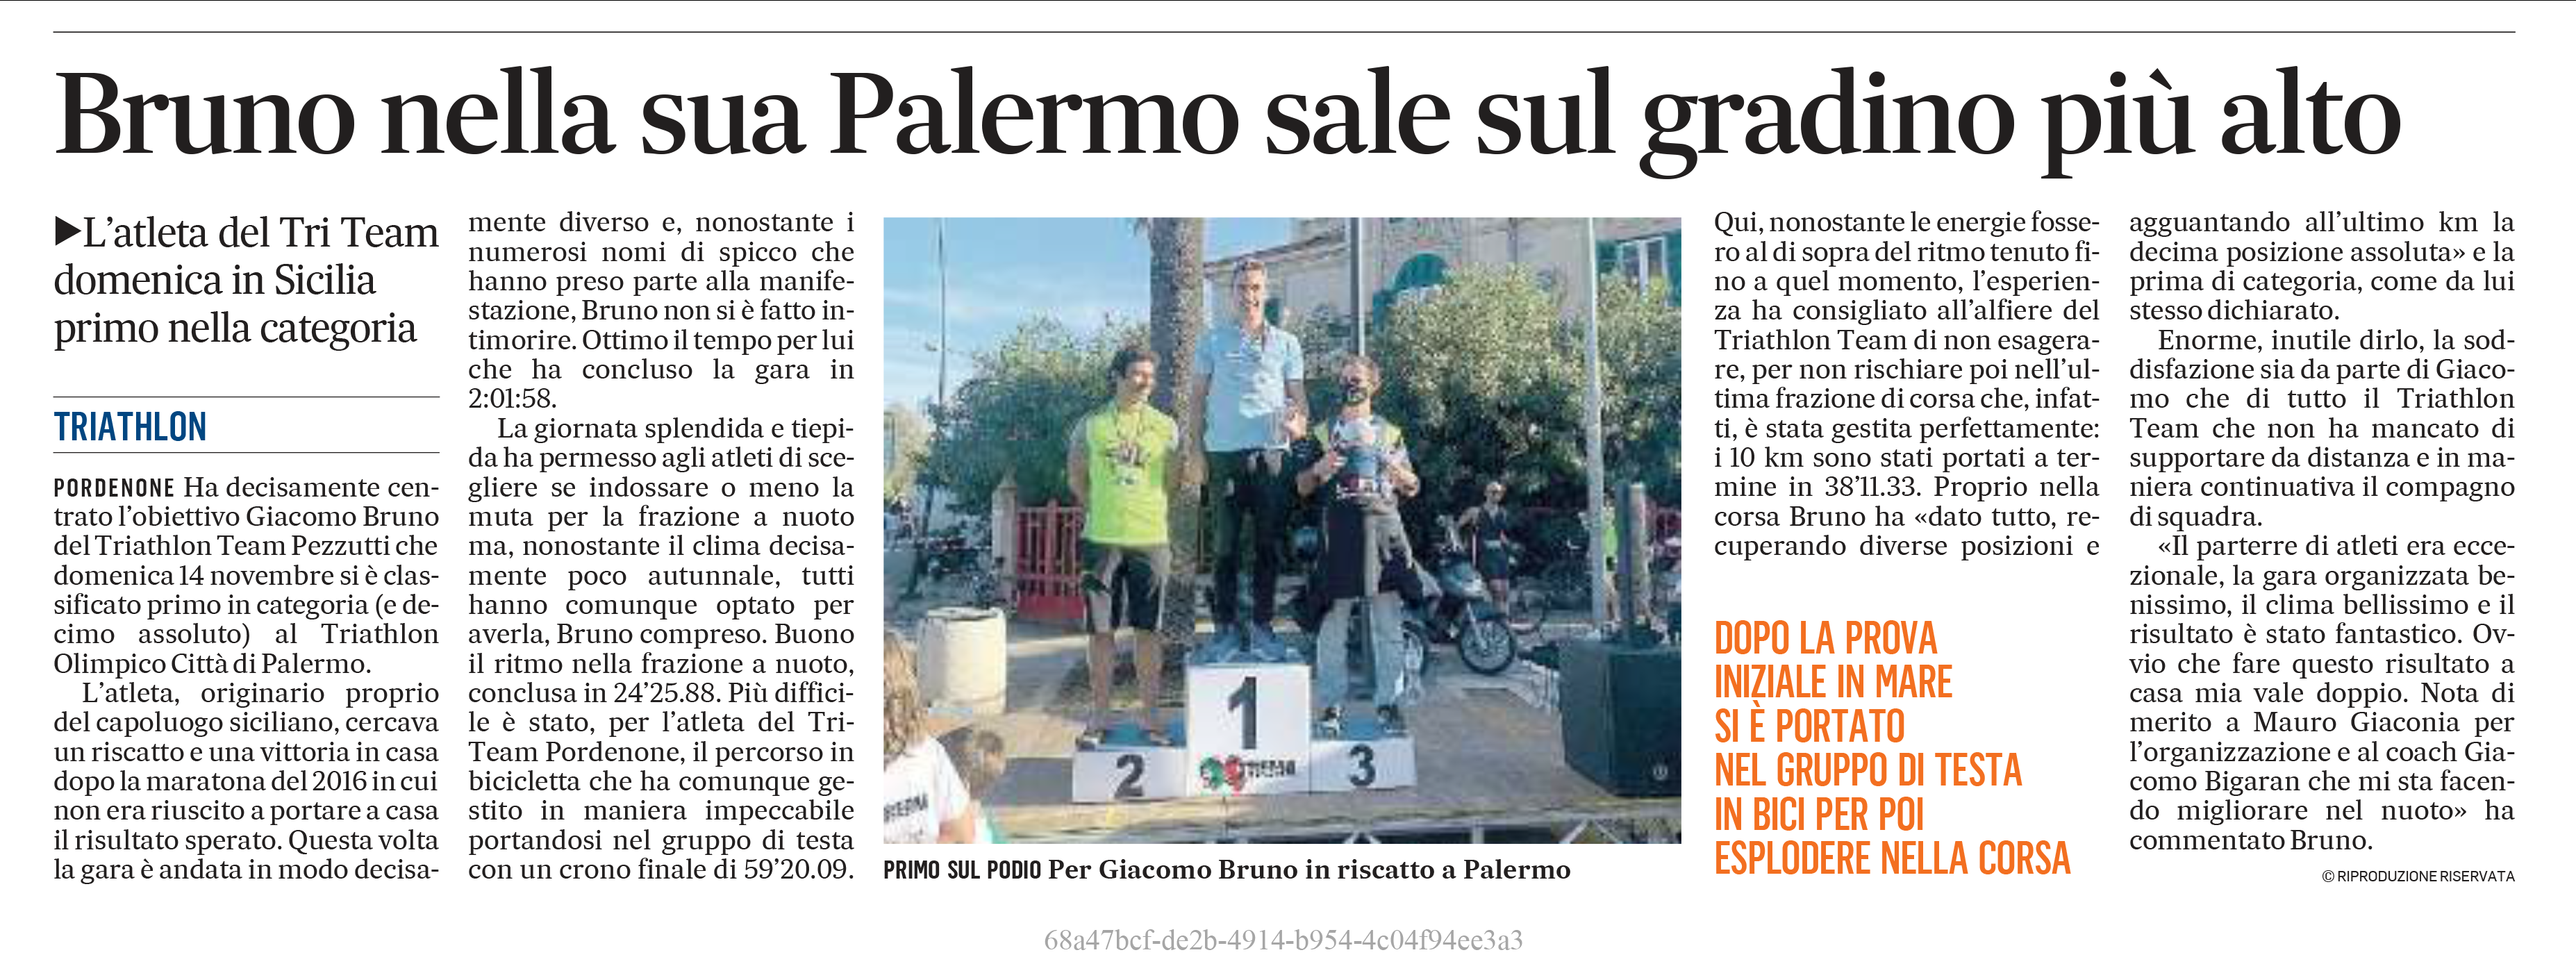 Gazzettino_16-11-2021: Bruno nella sua Palermo sale sul gradino più alto